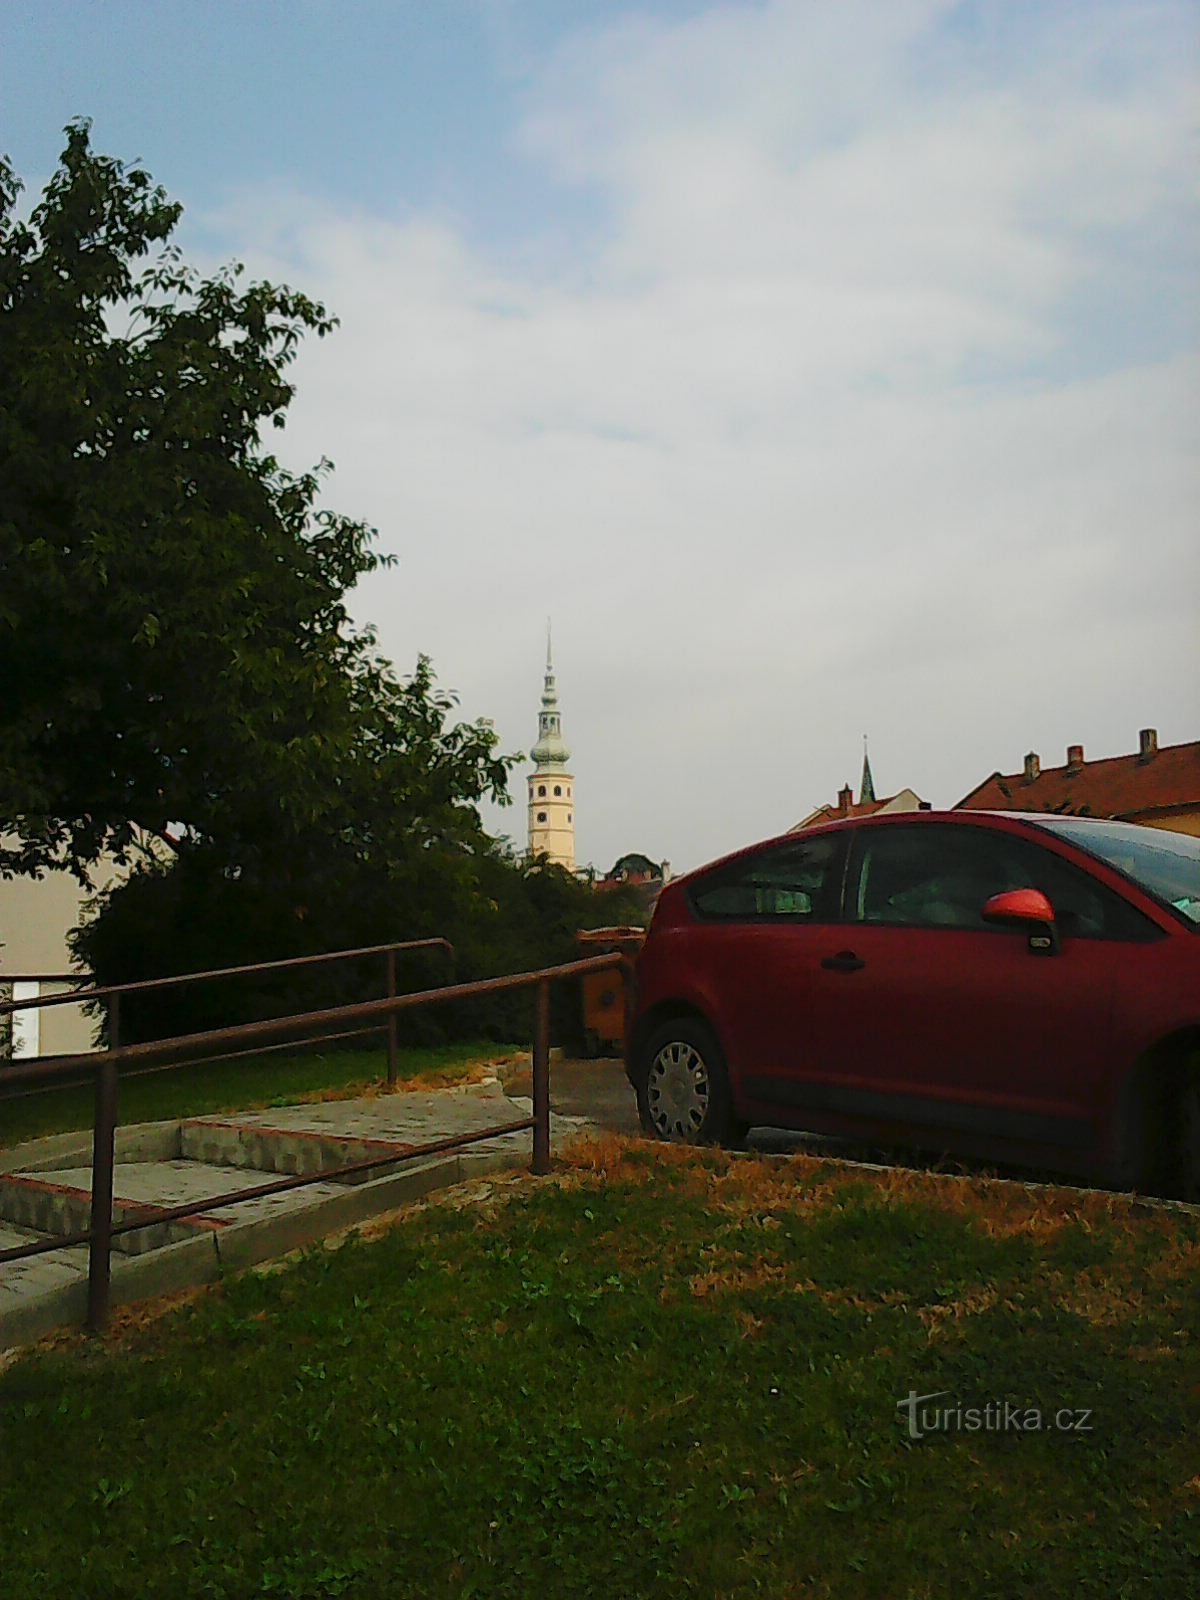 La tour du château de Tovačovské visible de loin - mon principal point de référence :)